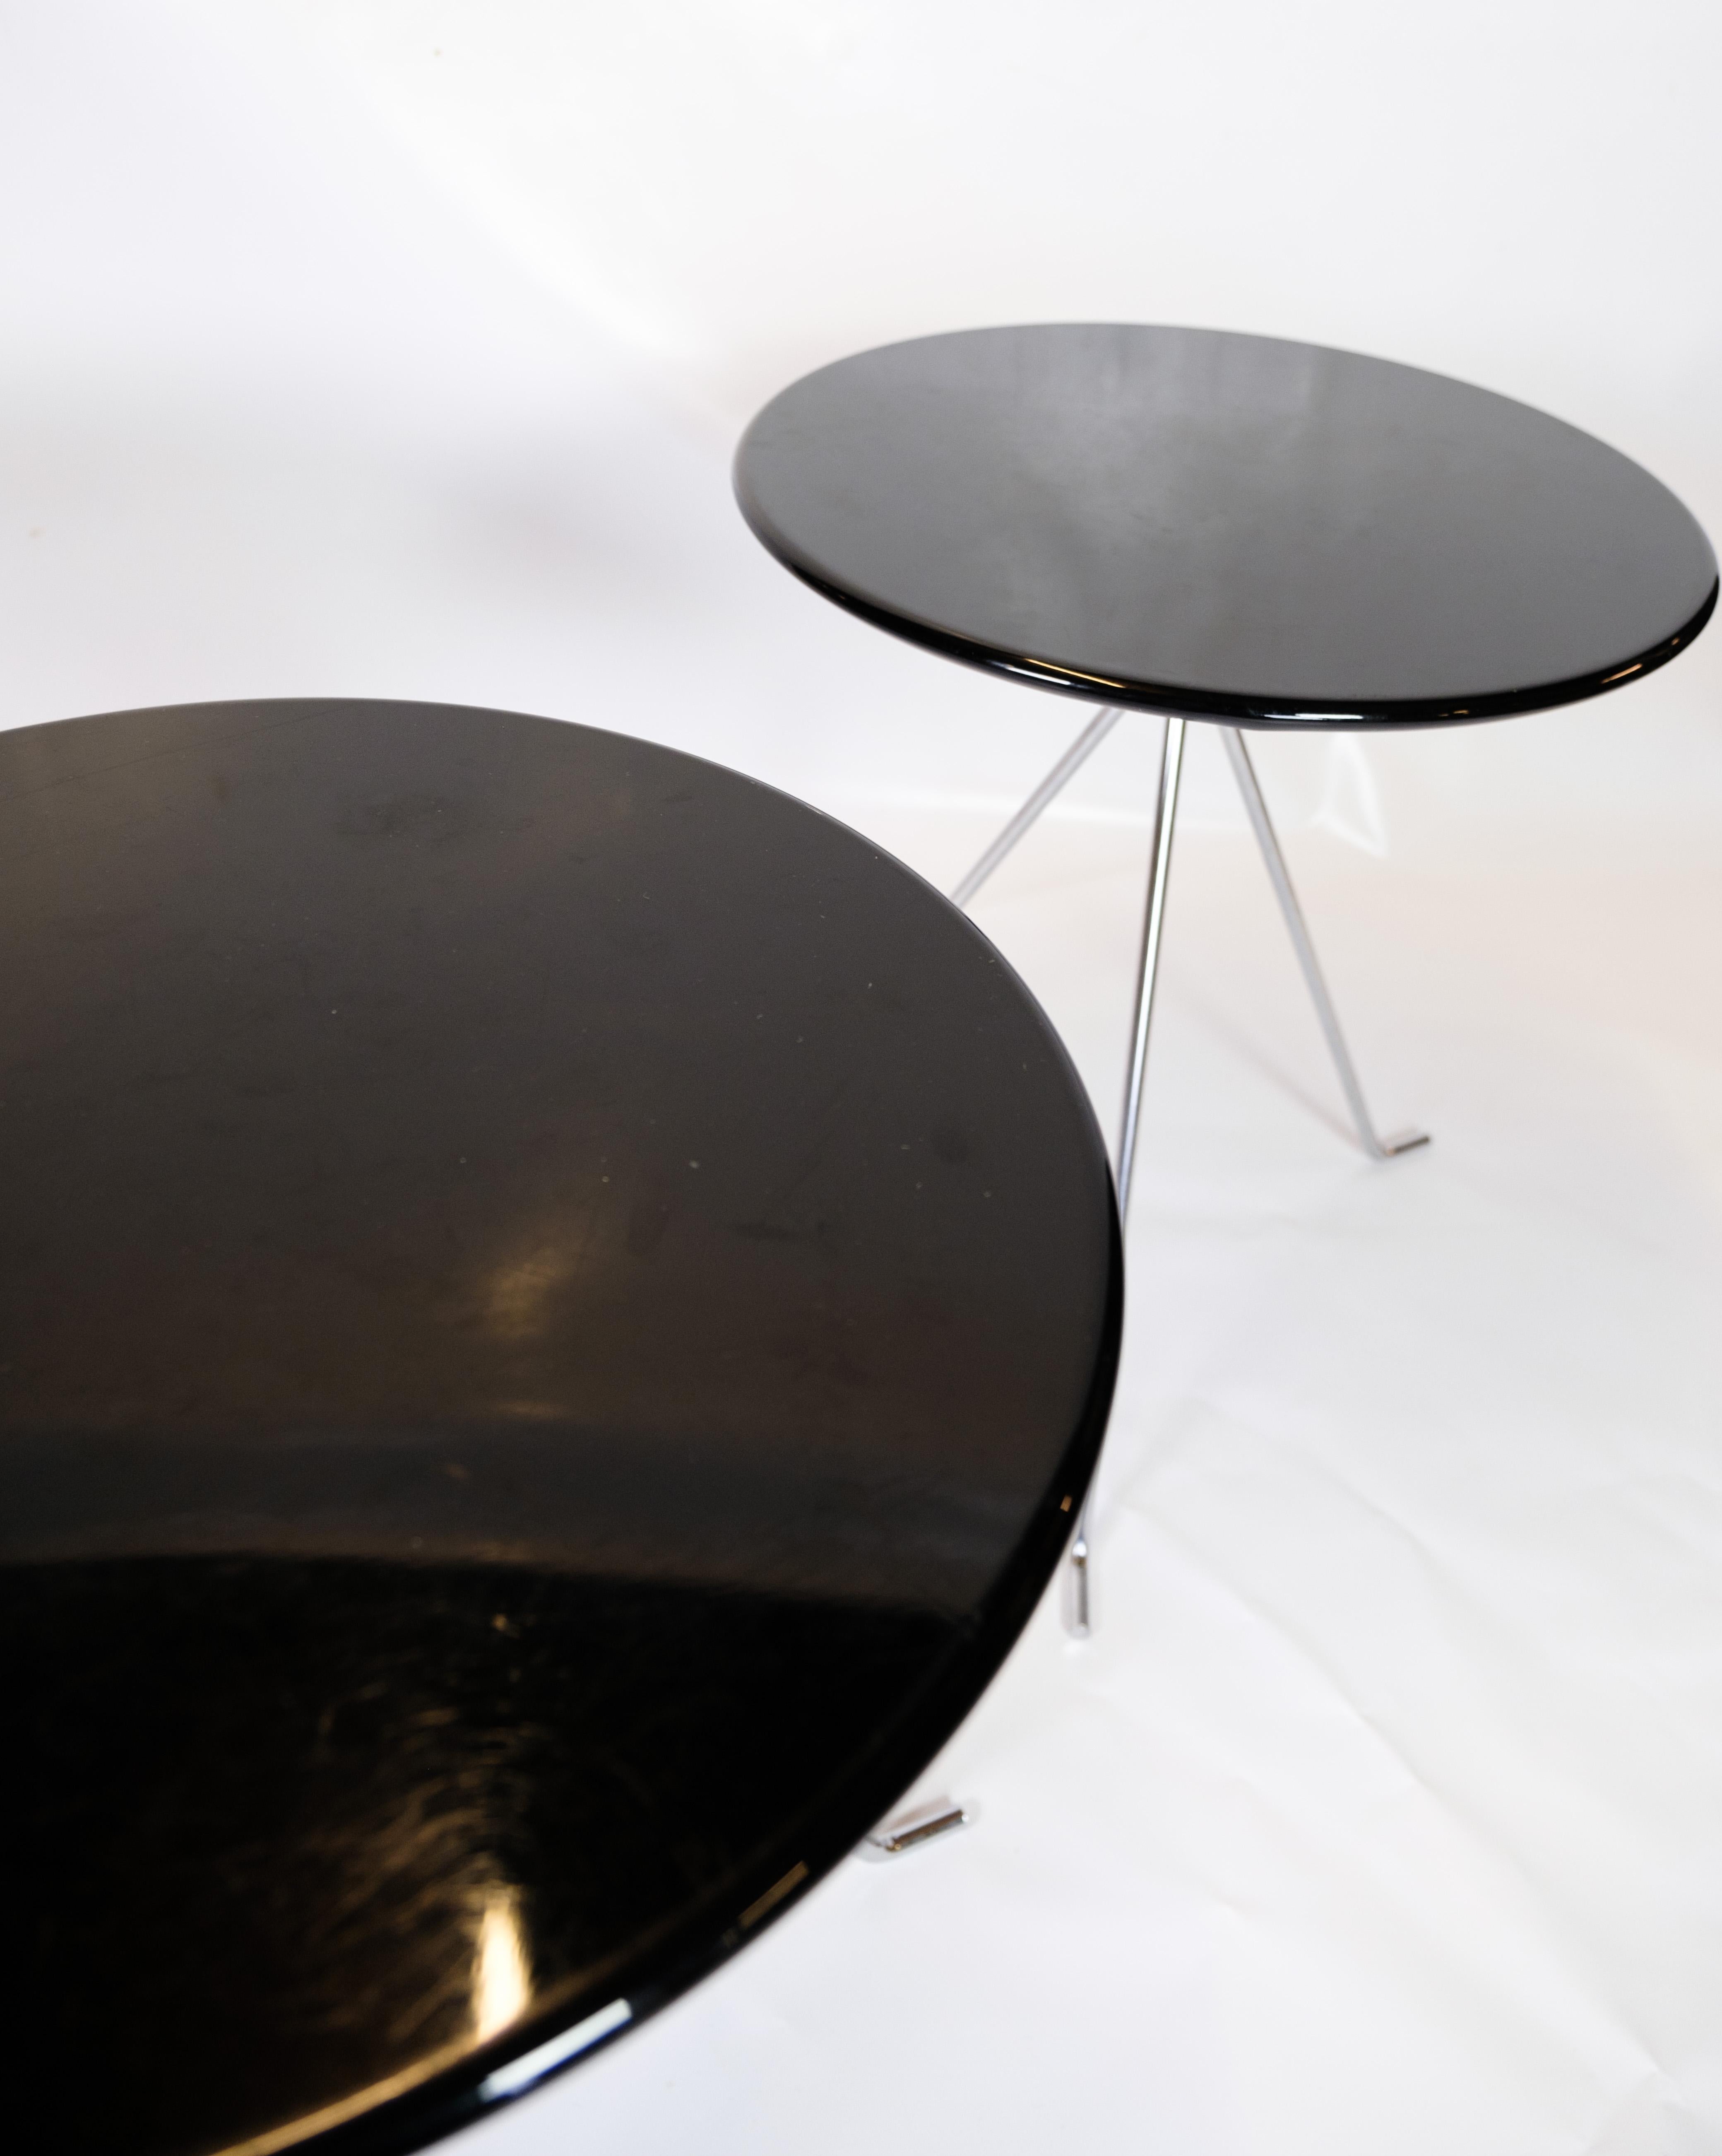 Ensemble de tables basses composé de 3 petites tables rondes aux pieds chromés avec mécanisme de pliage et surface noire, originaires du Danemark.
Dimensions en cm : H:55 Dia : 48